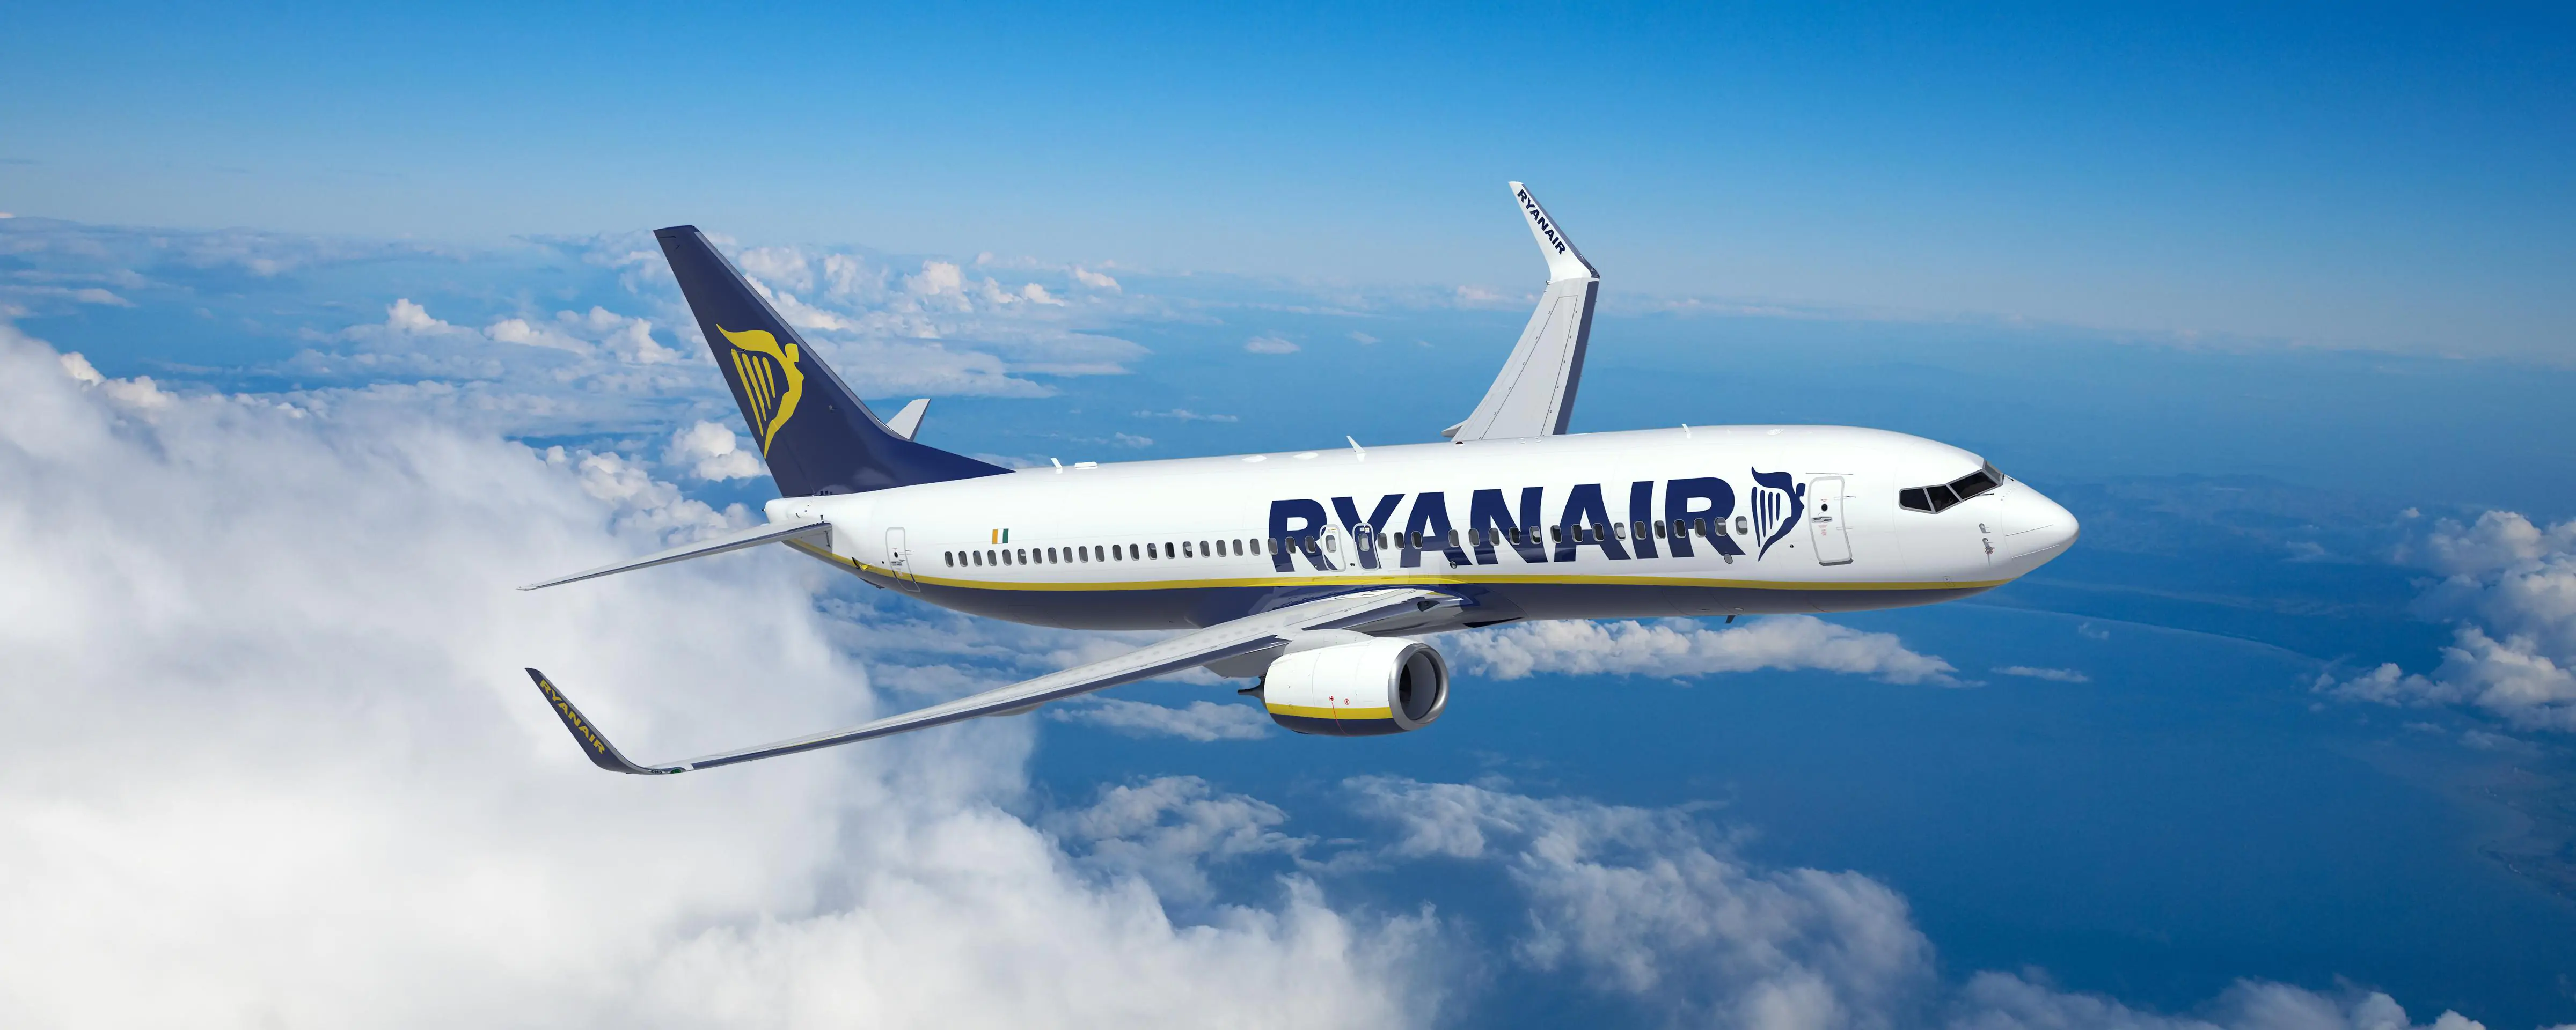 Ryanair biglietti gratis: si viaggerà senza spendere